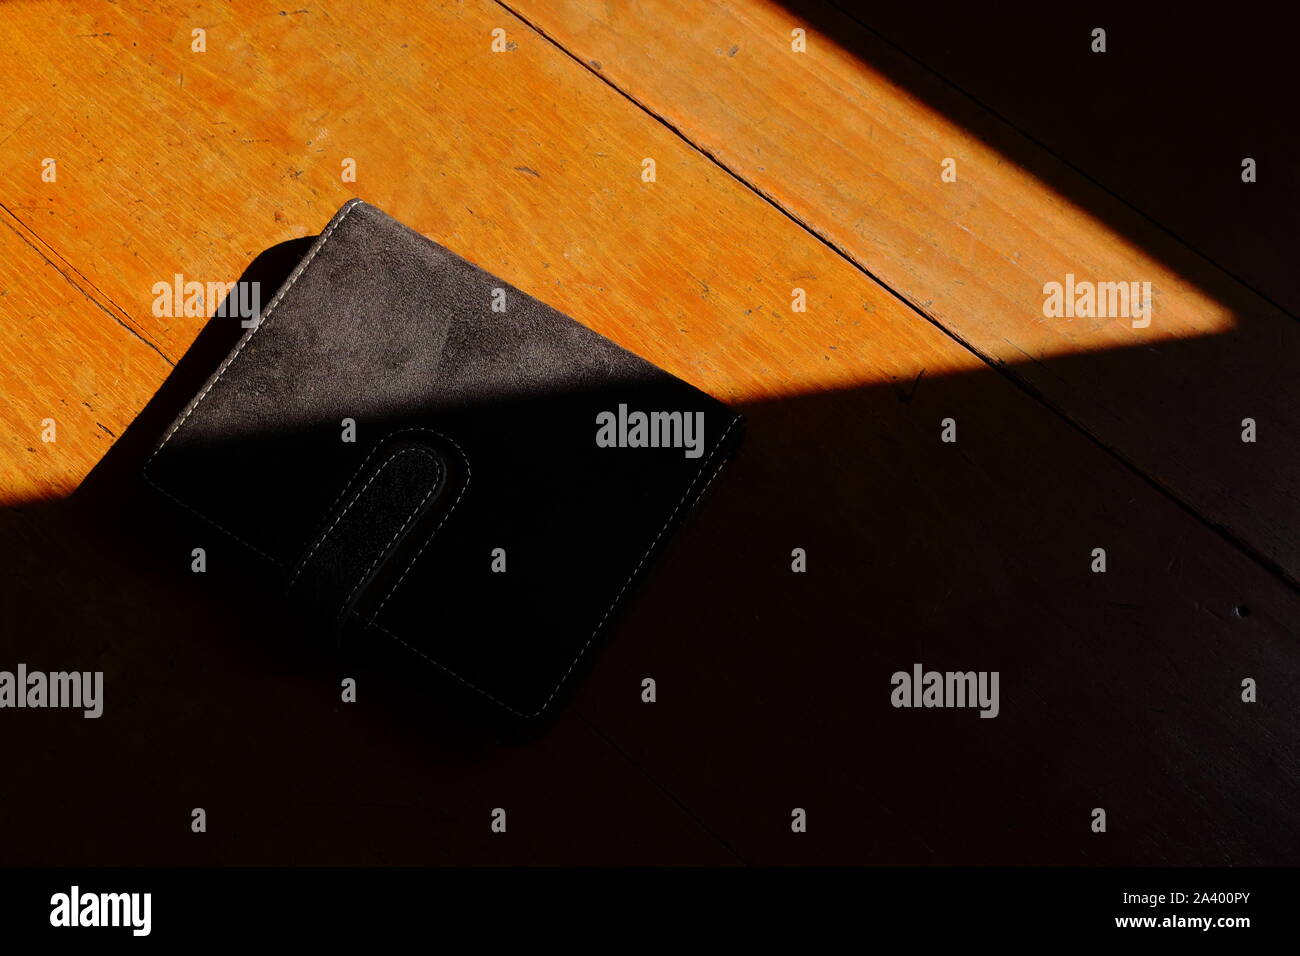 Nahaufnahme von einer geschlossenen Black Book auf hölzernen Tisch unter Sonneneinstrahlung ausgesetzt, schwarzes Buch Konzept Stockfoto